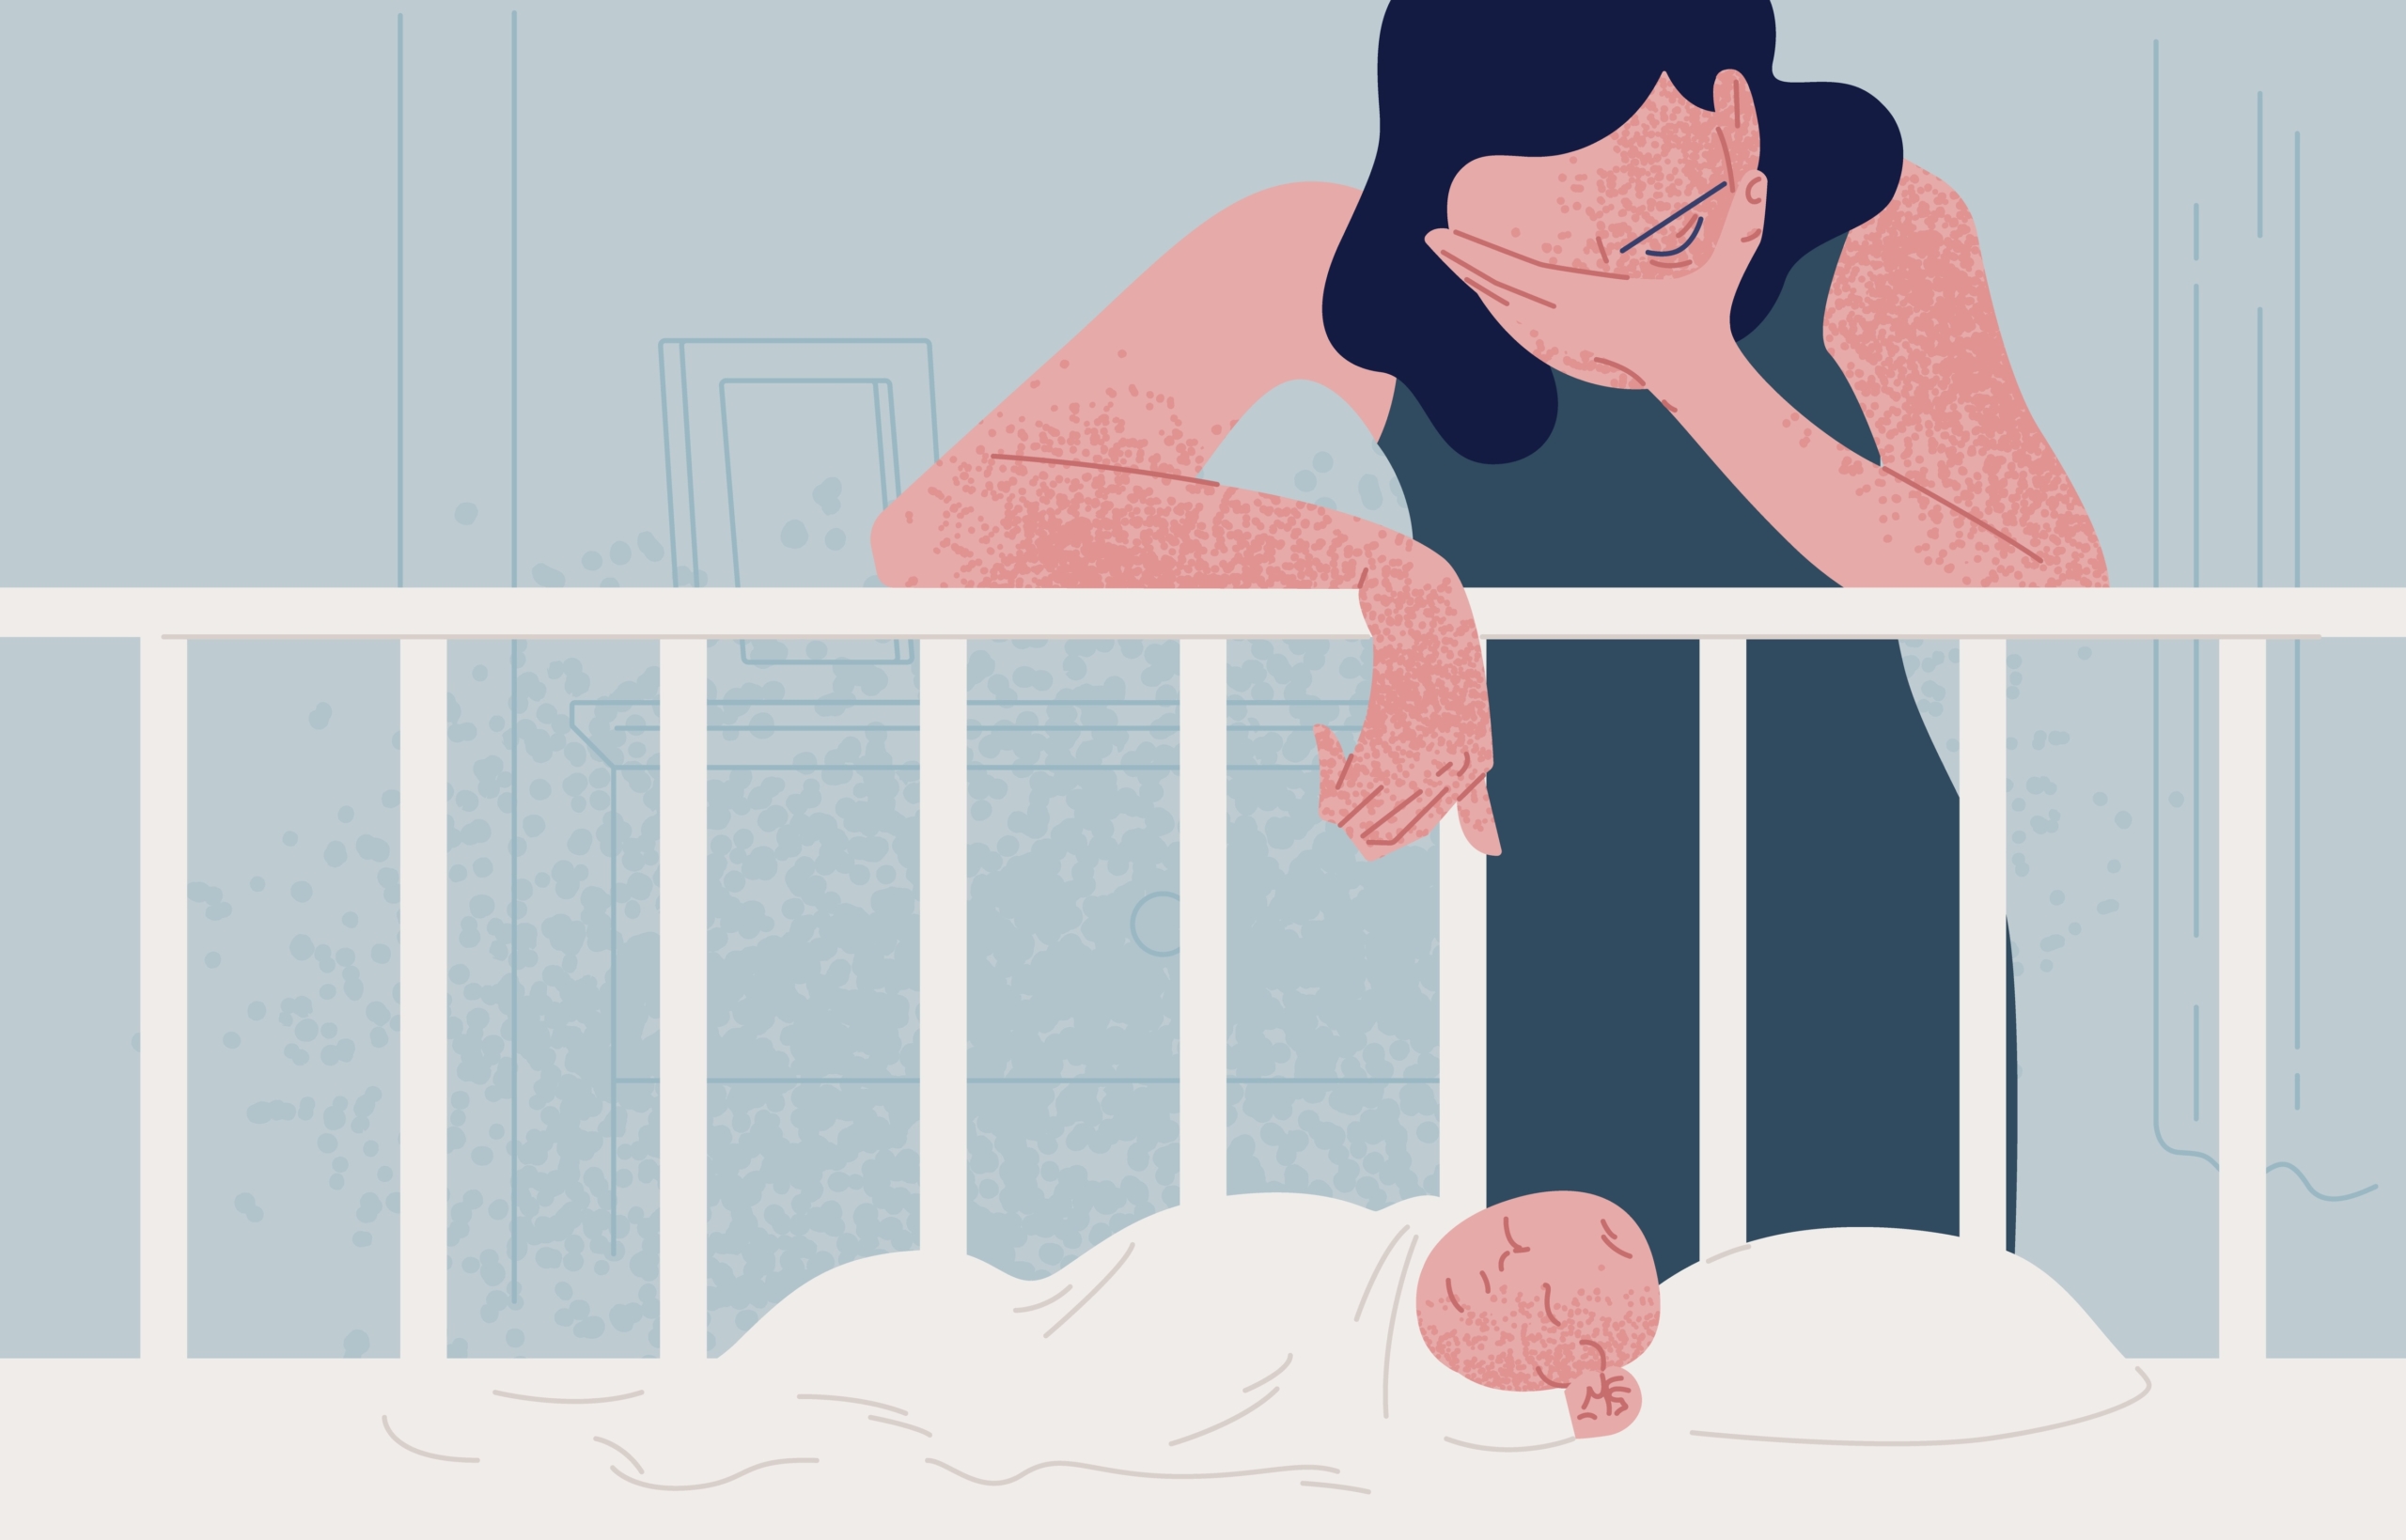 რა არის მშობიარობის შემდგომი დეპრესია?